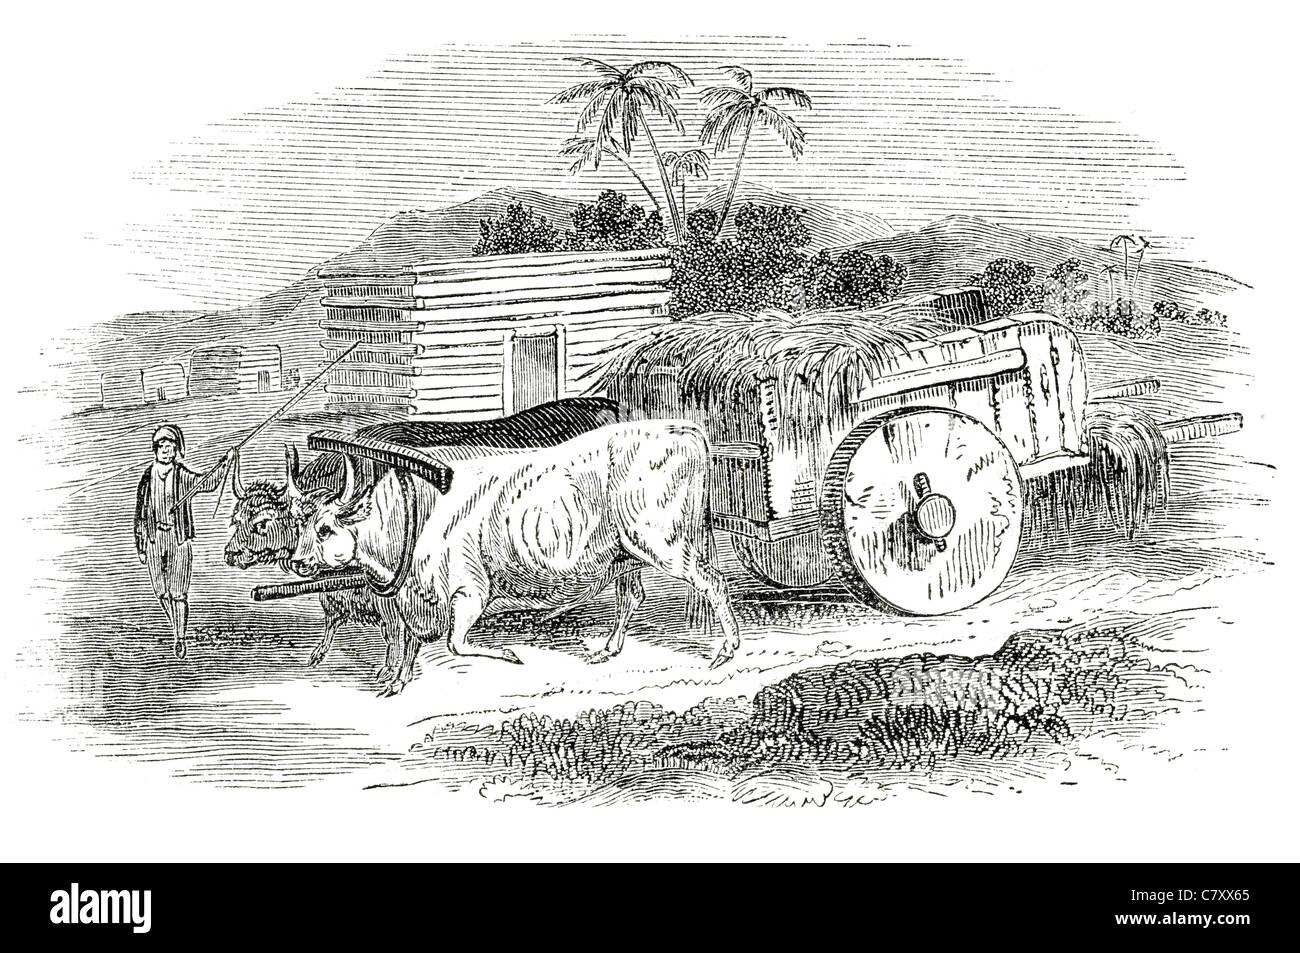 République moderne panier chariots de transport chariot boeufs Ox balle roue ancien whip de paille Banque D'Images